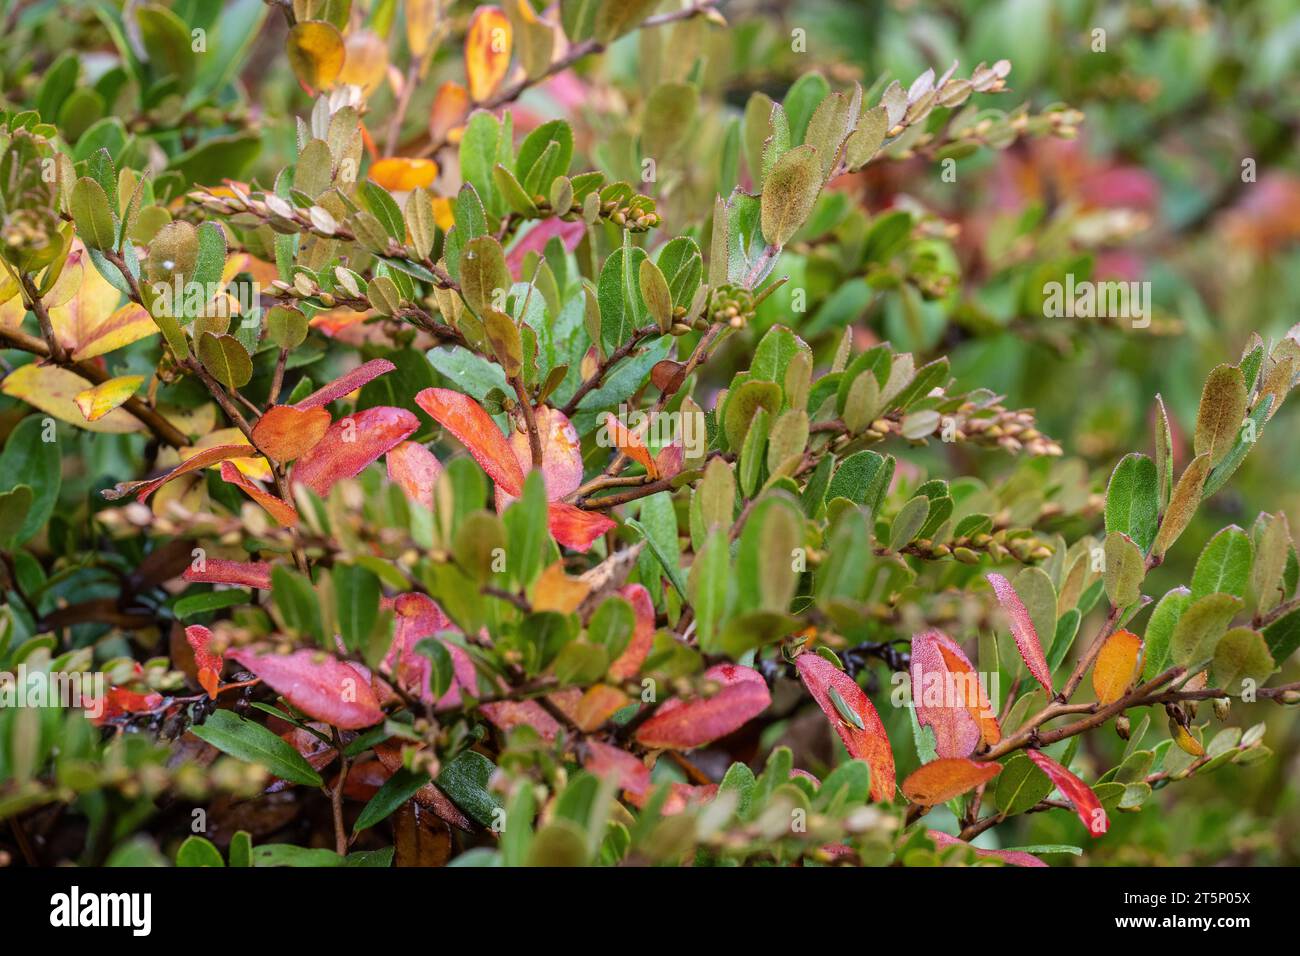 Leatherleaf (Chamaedaphne calyculata), autumn foliage, Emsland, Lower Saxony, Germany Stock Photo